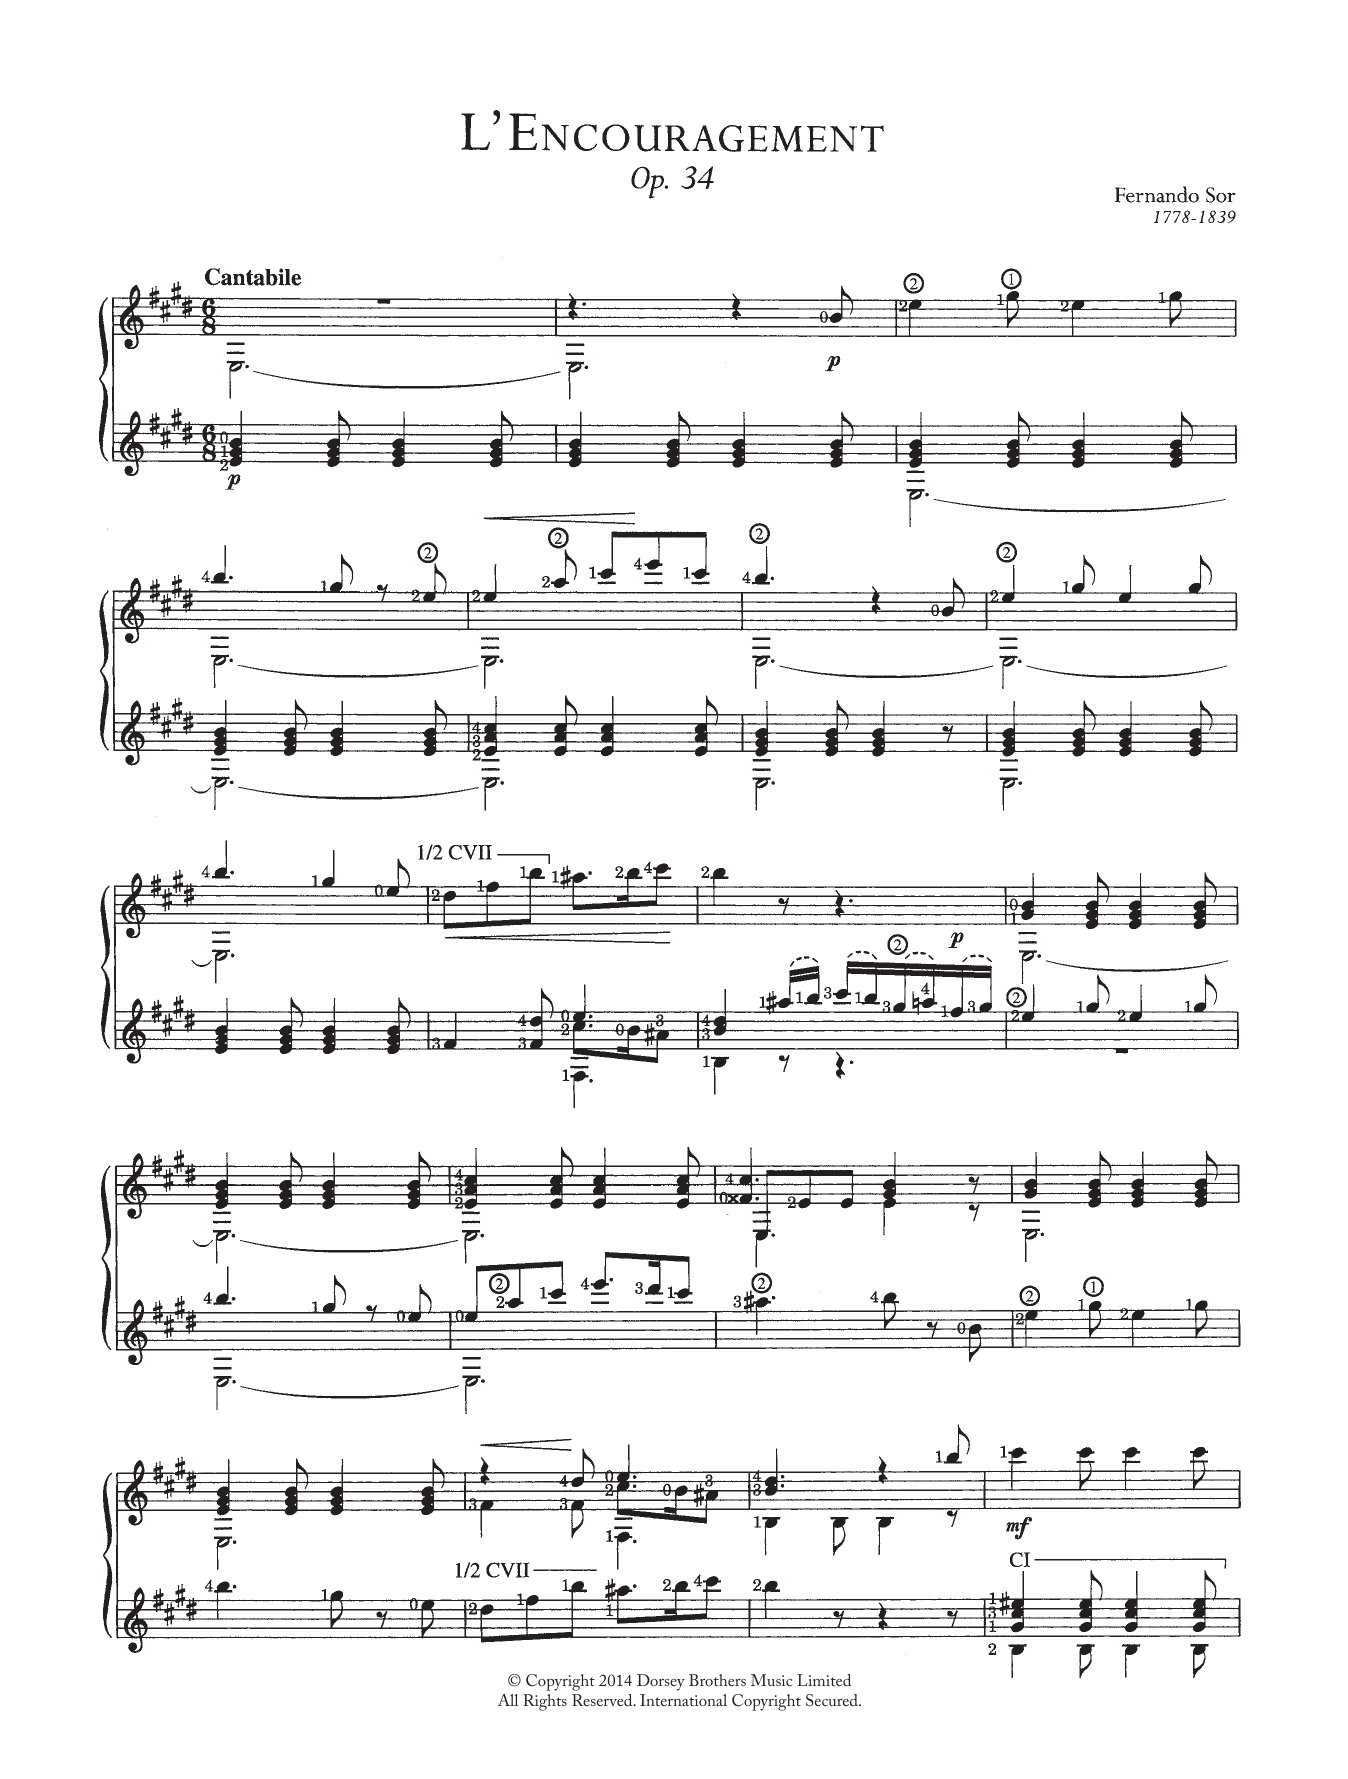 Fernando Sor L'encouragement Sheet Music Notes & Chords for Guitar - Download or Print PDF